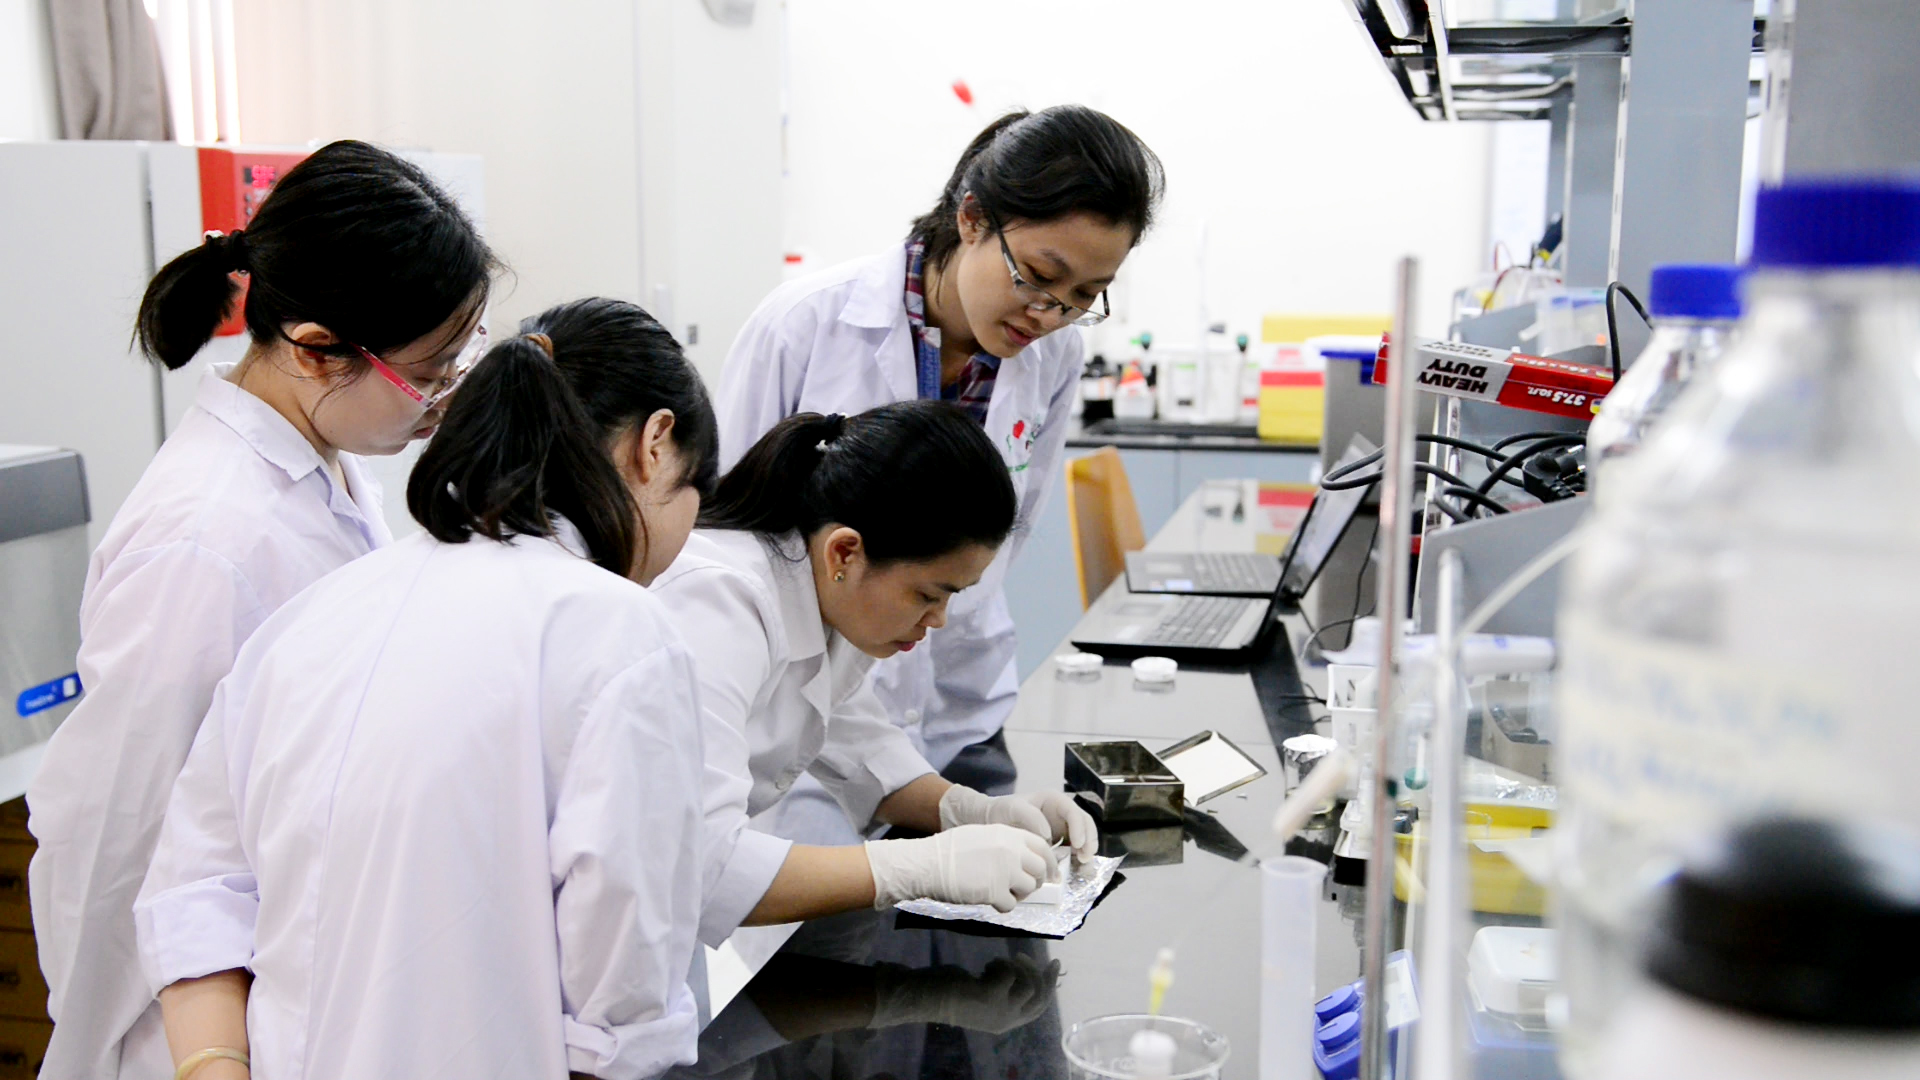 TS. Nguyễn Thị Hiệp hướng dẫn sinh viên thực hành trong phòng thí nghiệm. Ảnh: BME 